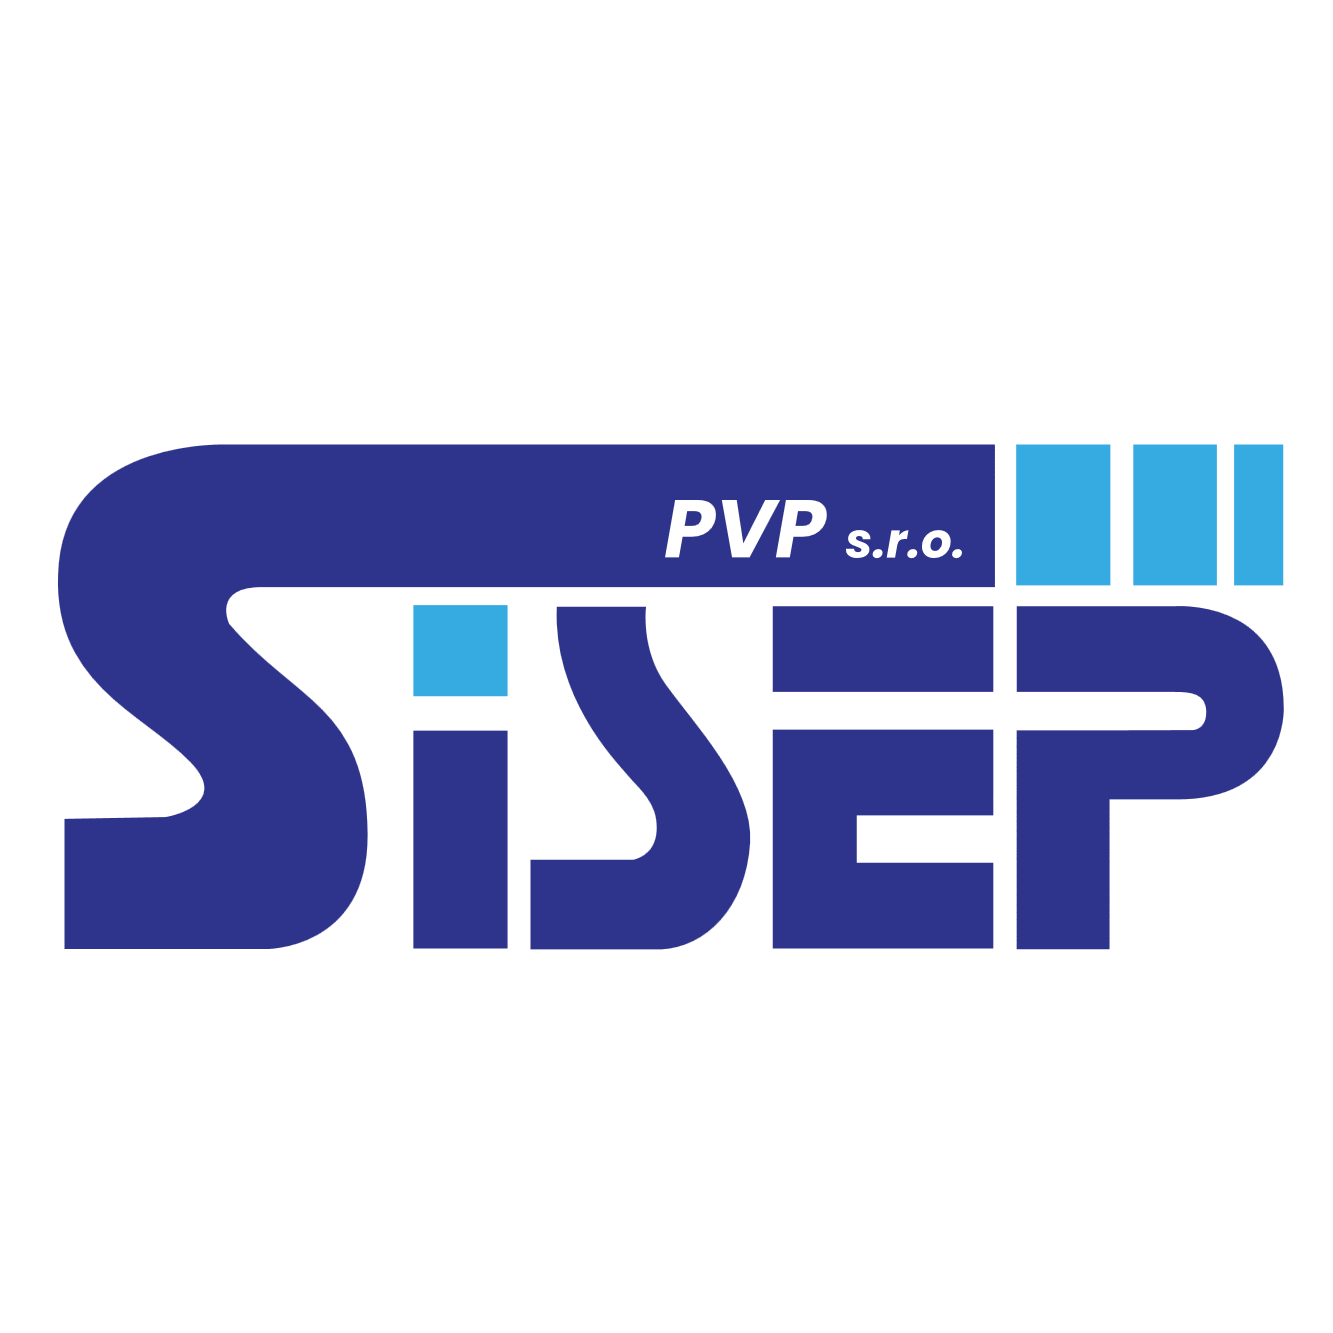 SISEP - PVP, s.r.o.